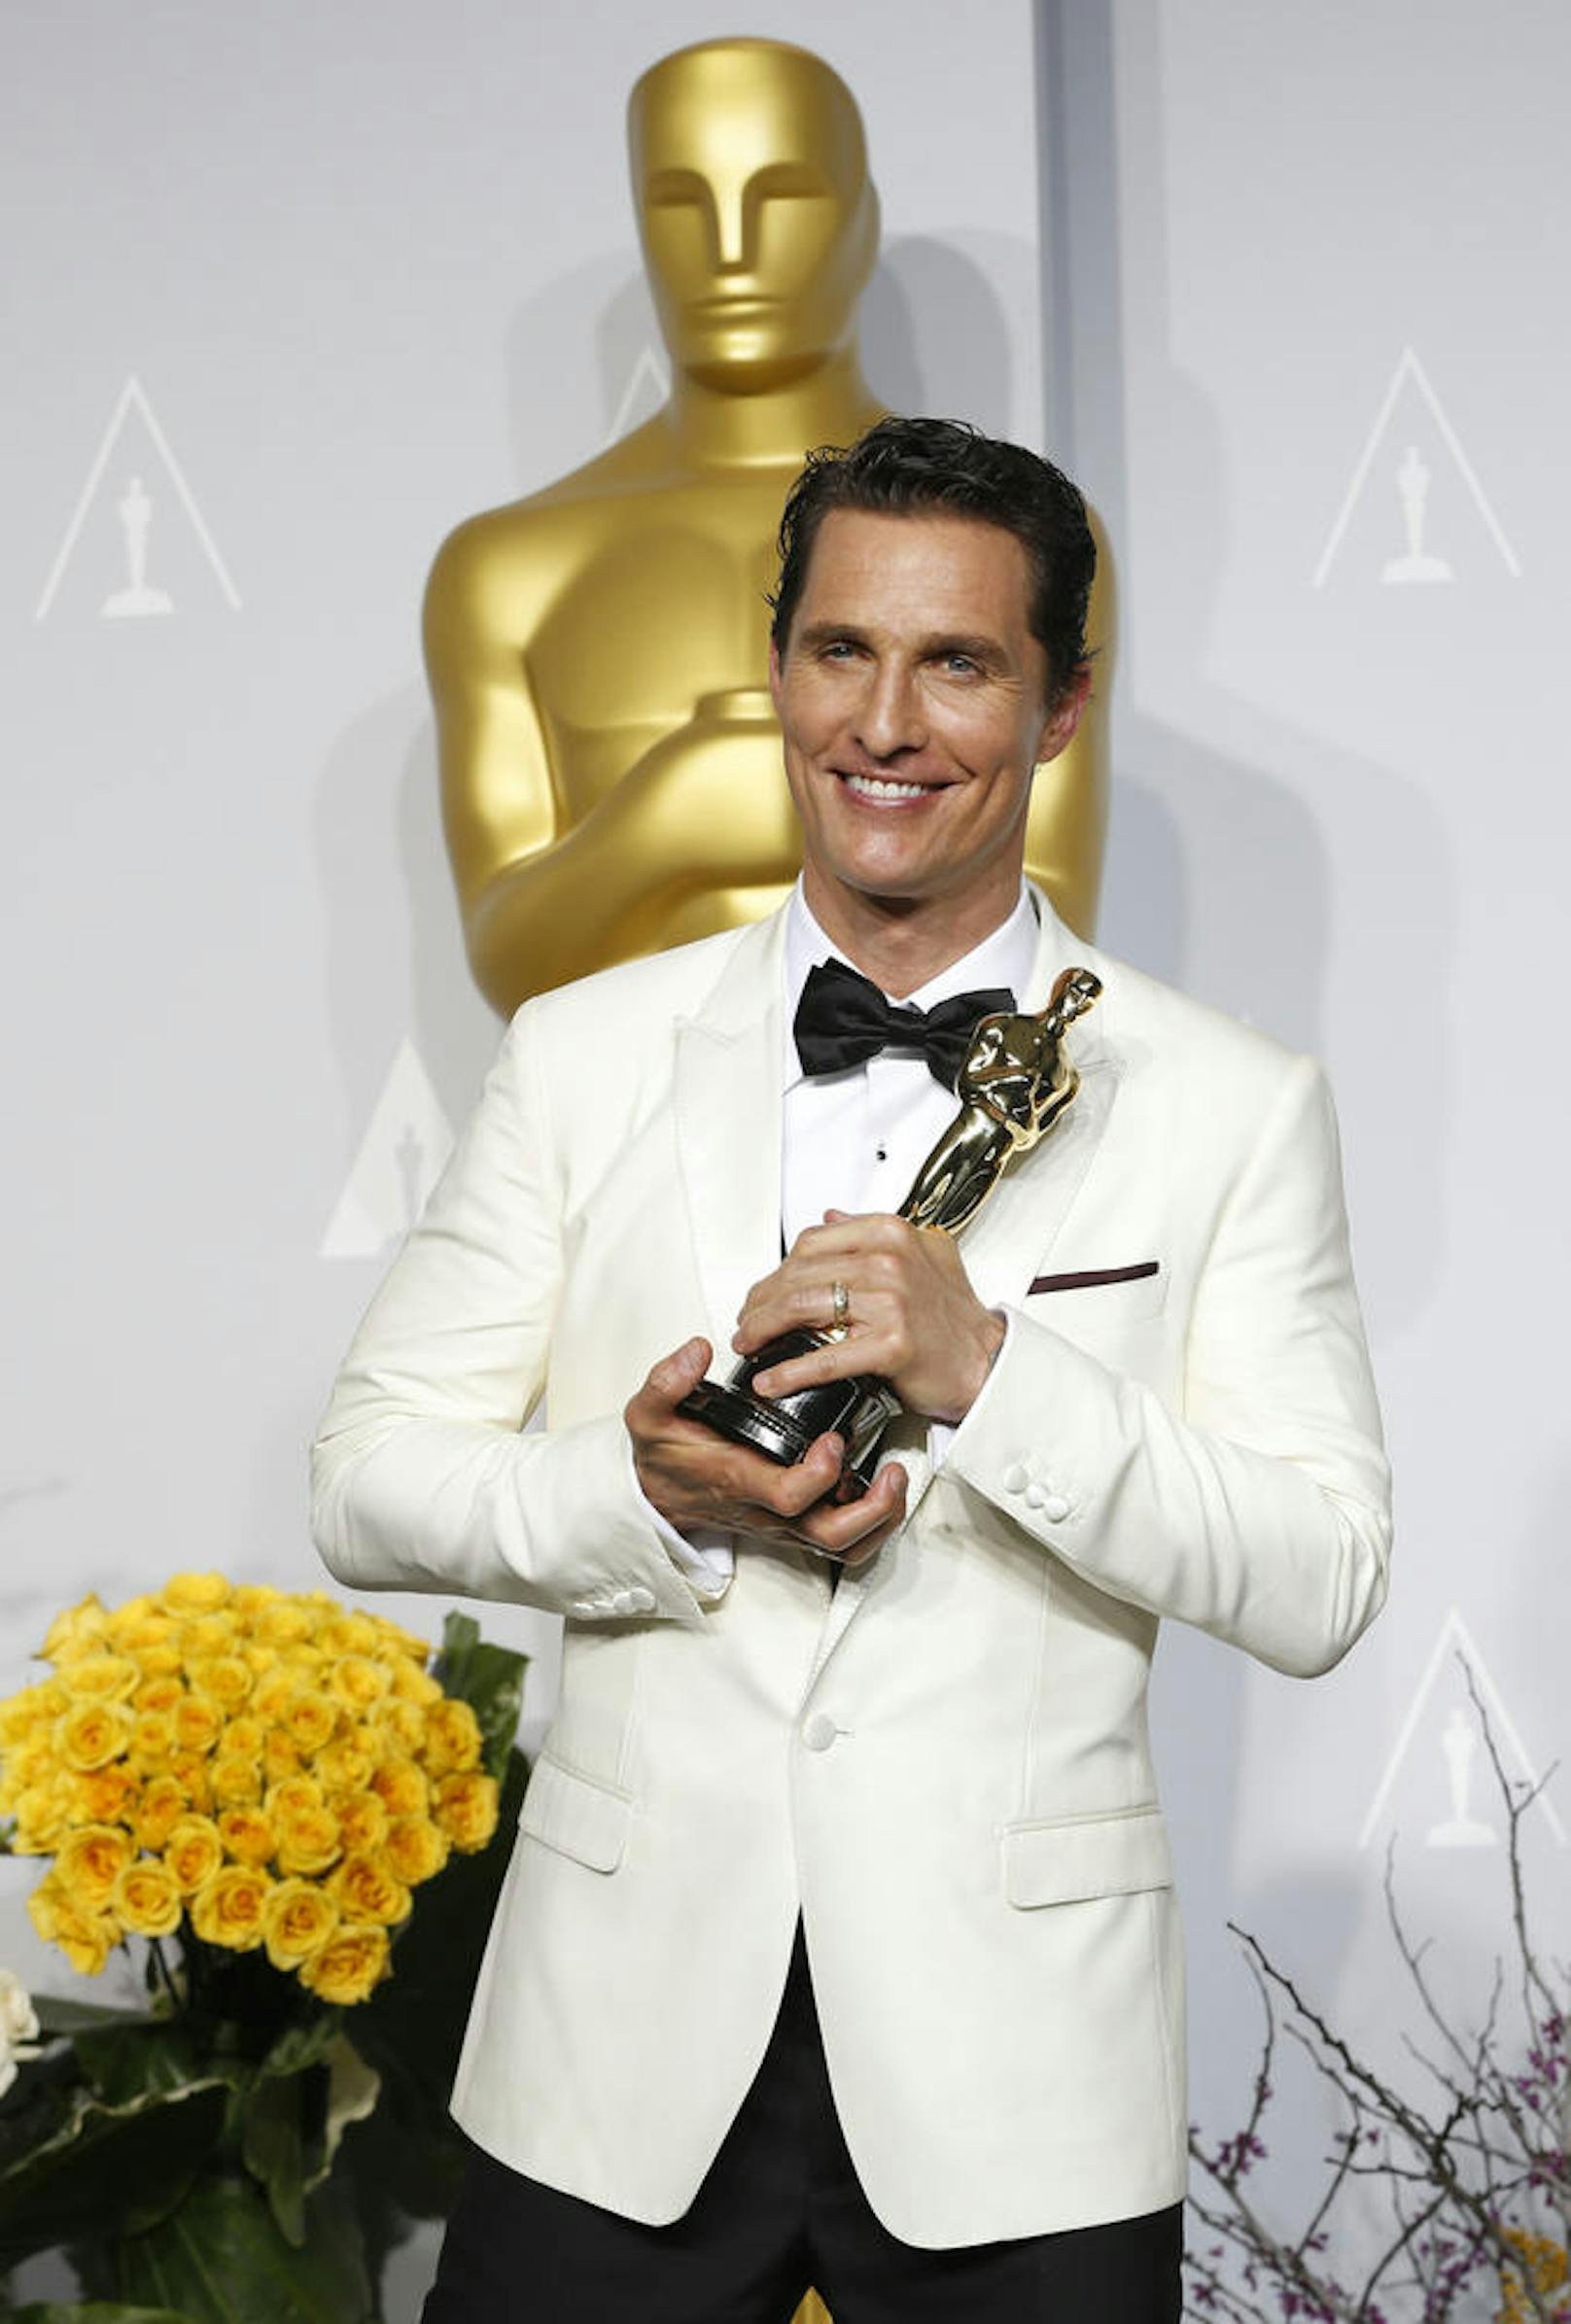 Matthew McConaughey bei den 86. Academy Awards in Hollywood, 2014. Er wurde als bester Hauptdarsteller ausgezeichnet (für "Dallas Buyers Club").